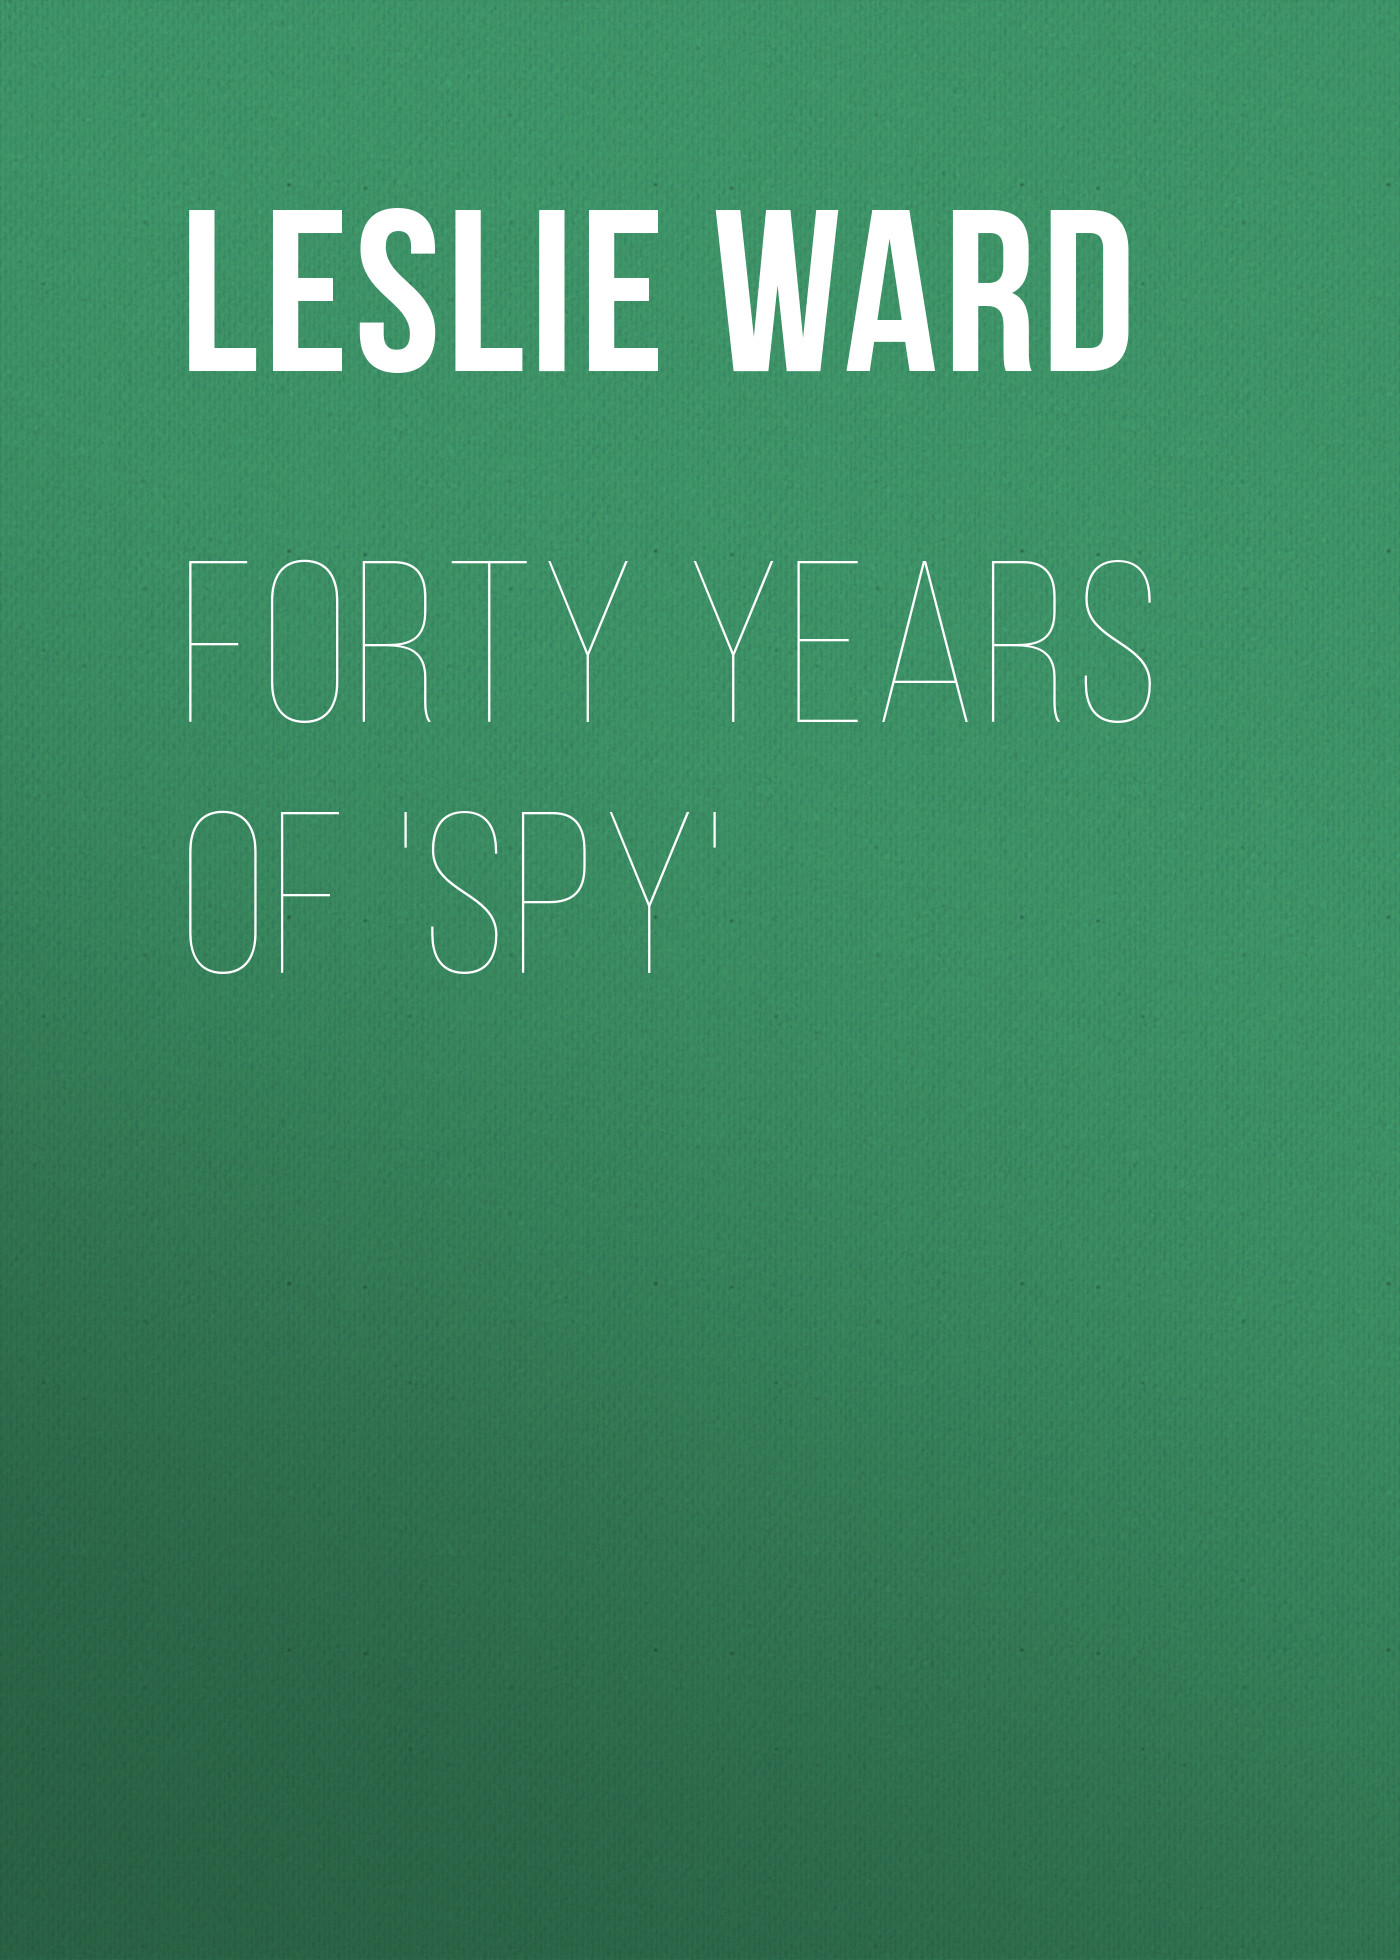 Книга Forty Years of 'Spy' из серии , созданная Leslie Ward, может относится к жанру Зарубежная классика, Зарубежная прикладная и научно-популярная литература, Изобразительное искусство, фотография. Стоимость электронной книги Forty Years of 'Spy' с идентификатором 34336426 составляет 0 руб.